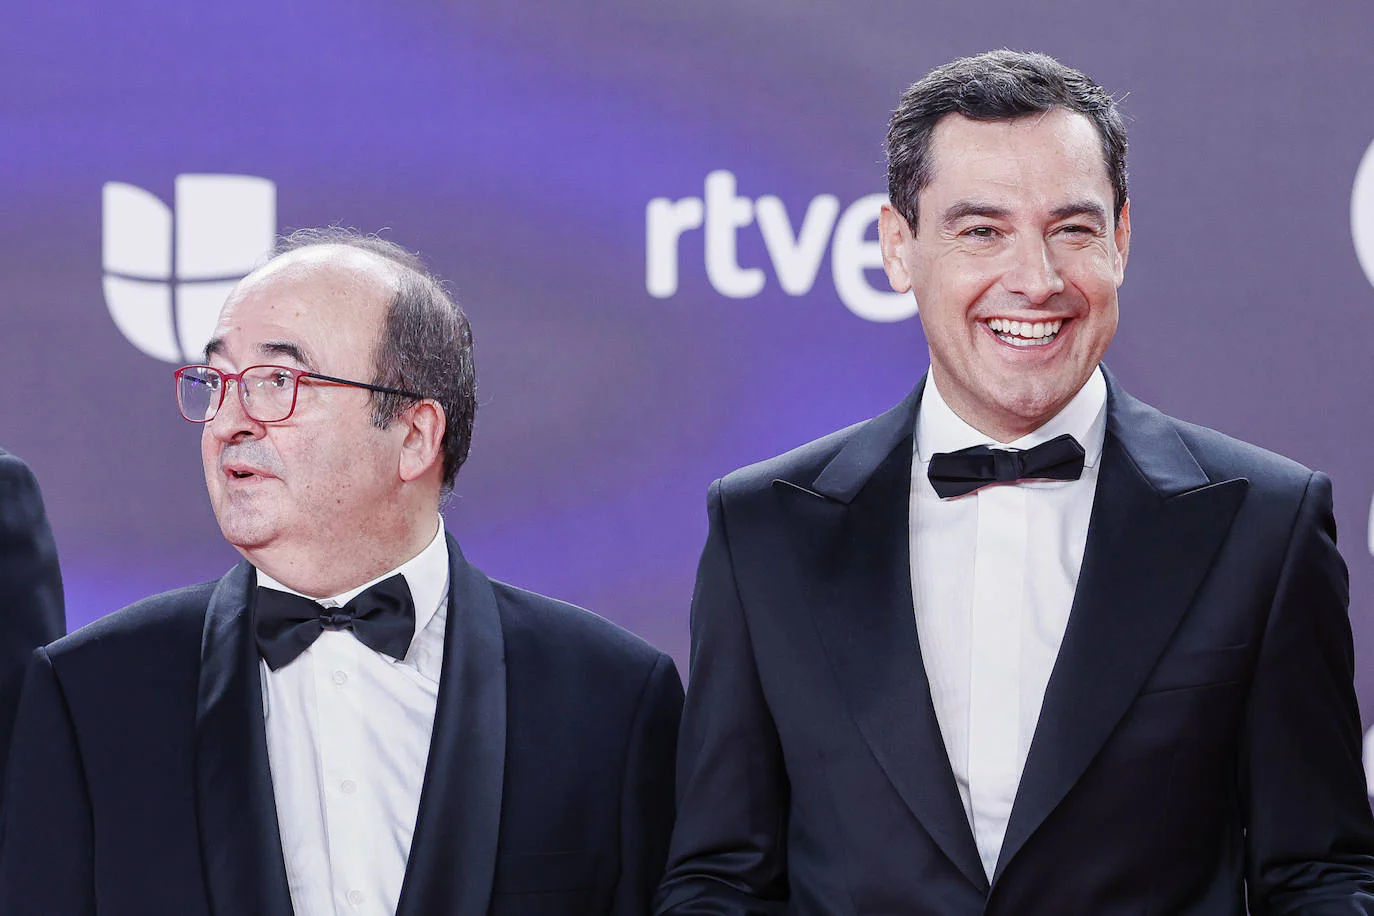 El actual ministro de Cultura y Deporte, Miquel Iceta, y el presidente de la Junta de Andalucía, Juan Manuel Moreno Bonilla